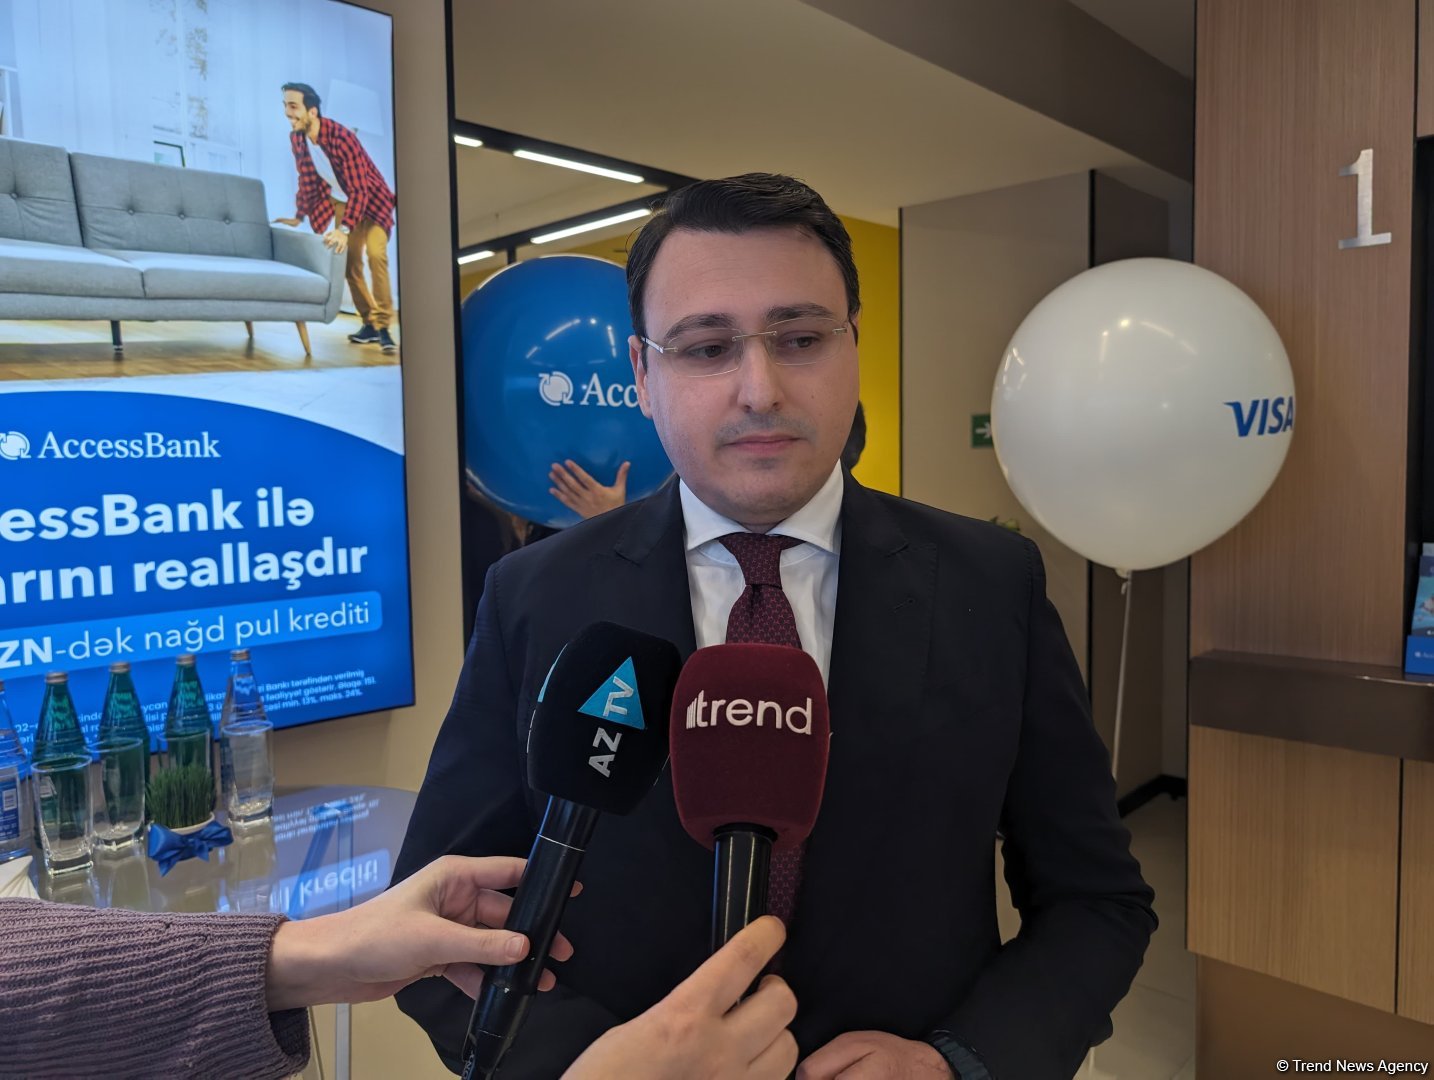 AccessBank планирует открыть еще ряд филиалов в регионах Азербайджана